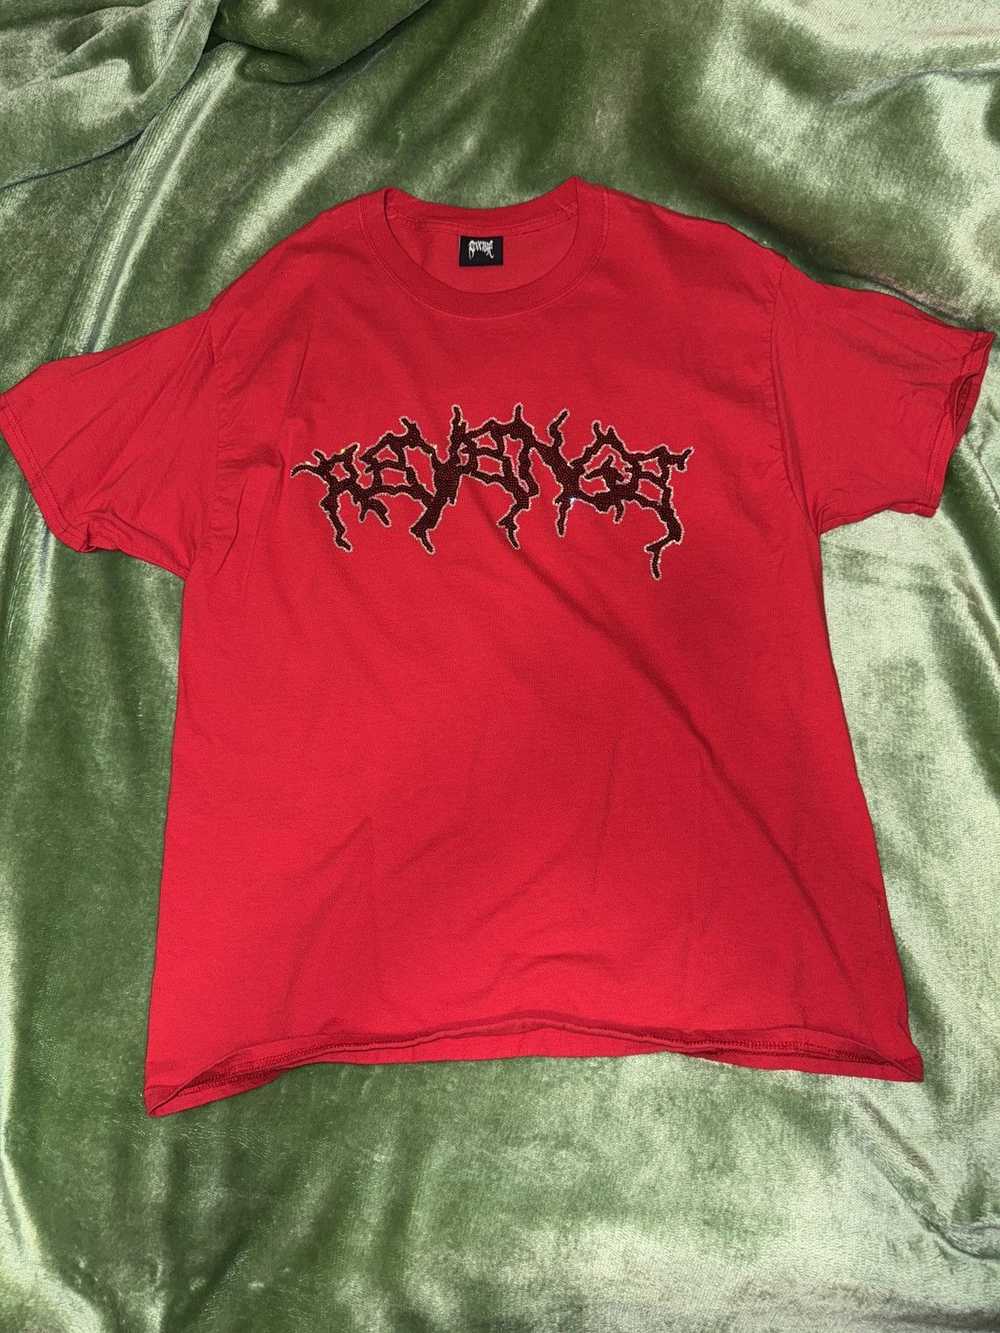 Revenge Revenge Crystal T-Shirt - image 1